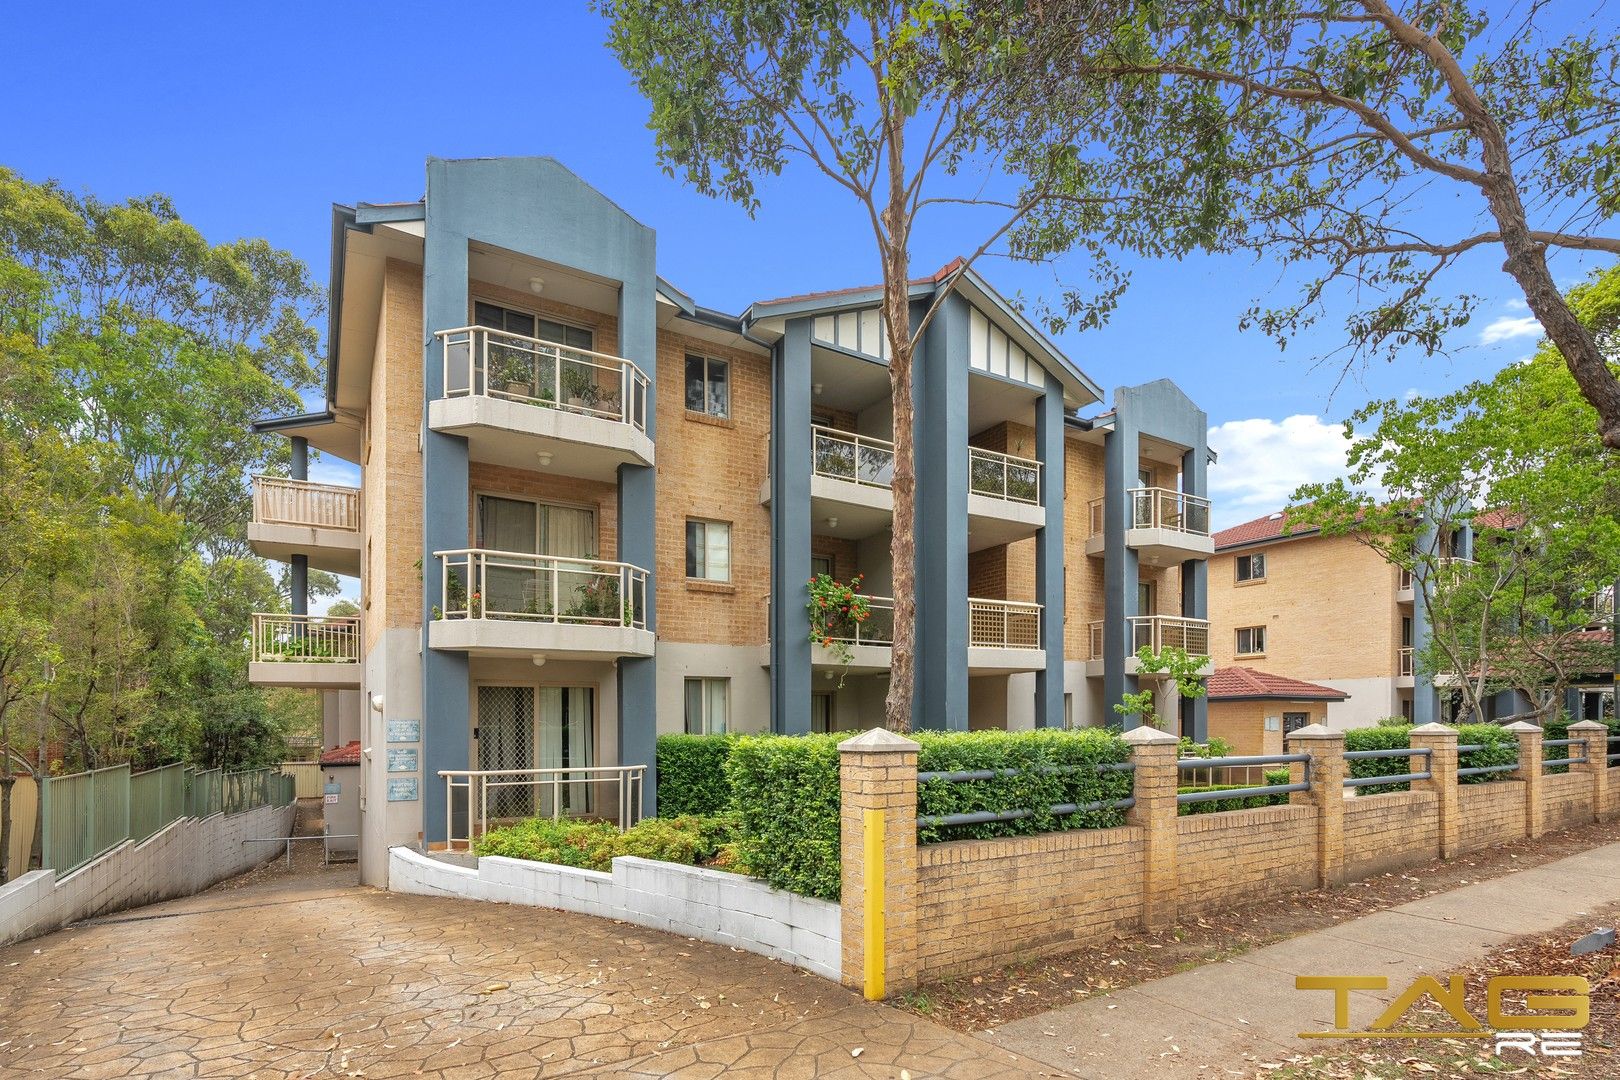 2 bedrooms Apartment / Unit / Flat in 11/30-36 Memorial Avenue MERRYLANDS NSW, 2160